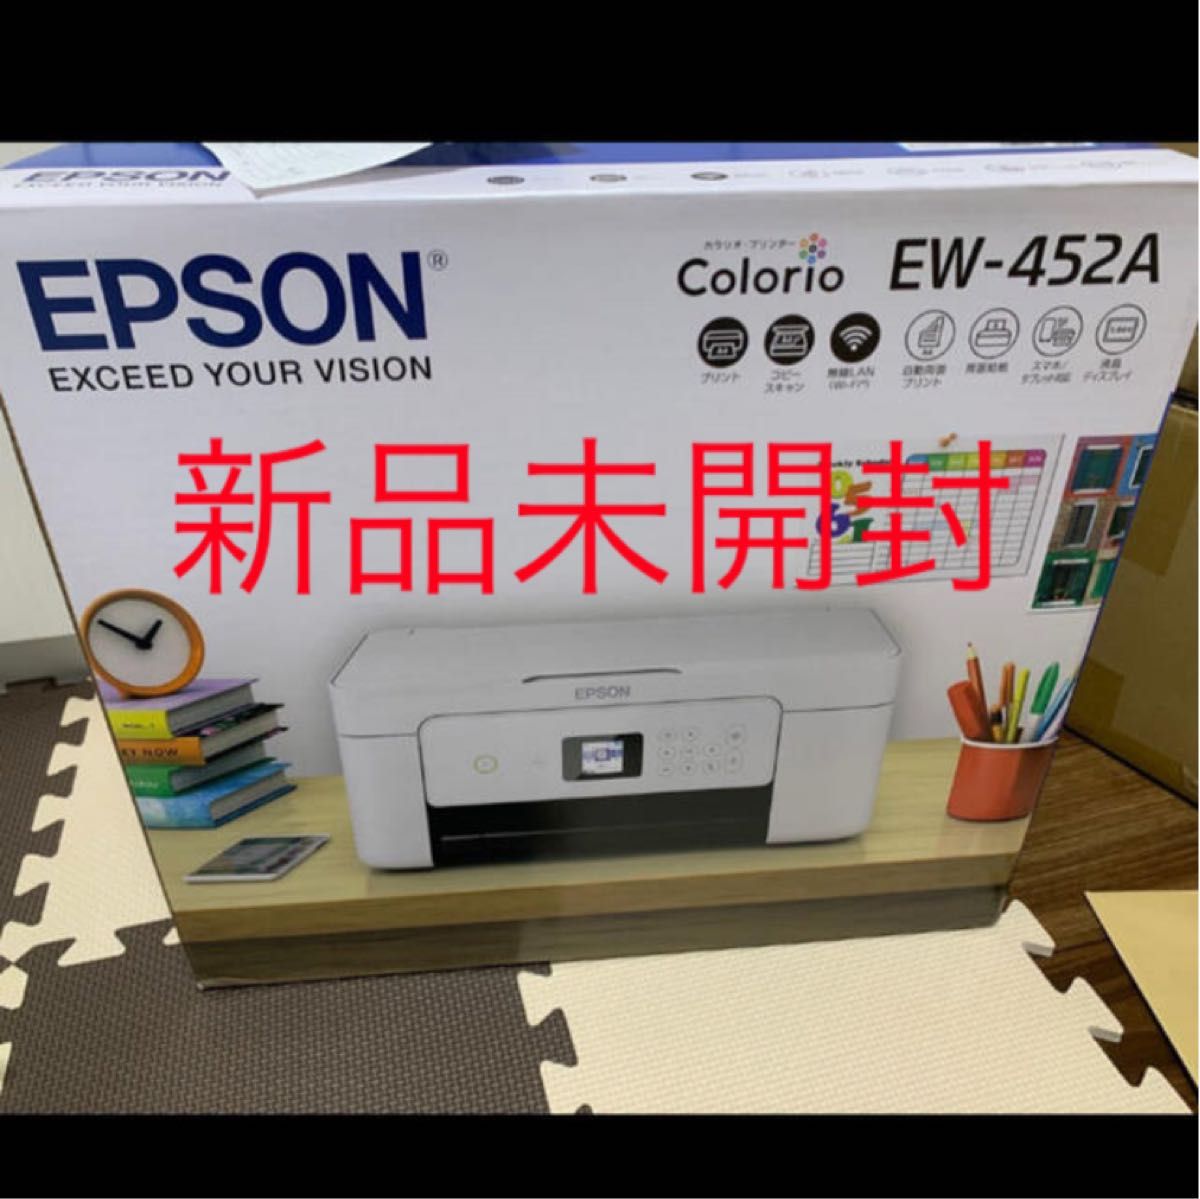 信頼】 エプソン EPSON Colorio カラリオ EW-452A ホワイト インクジェット複合機 A4対応